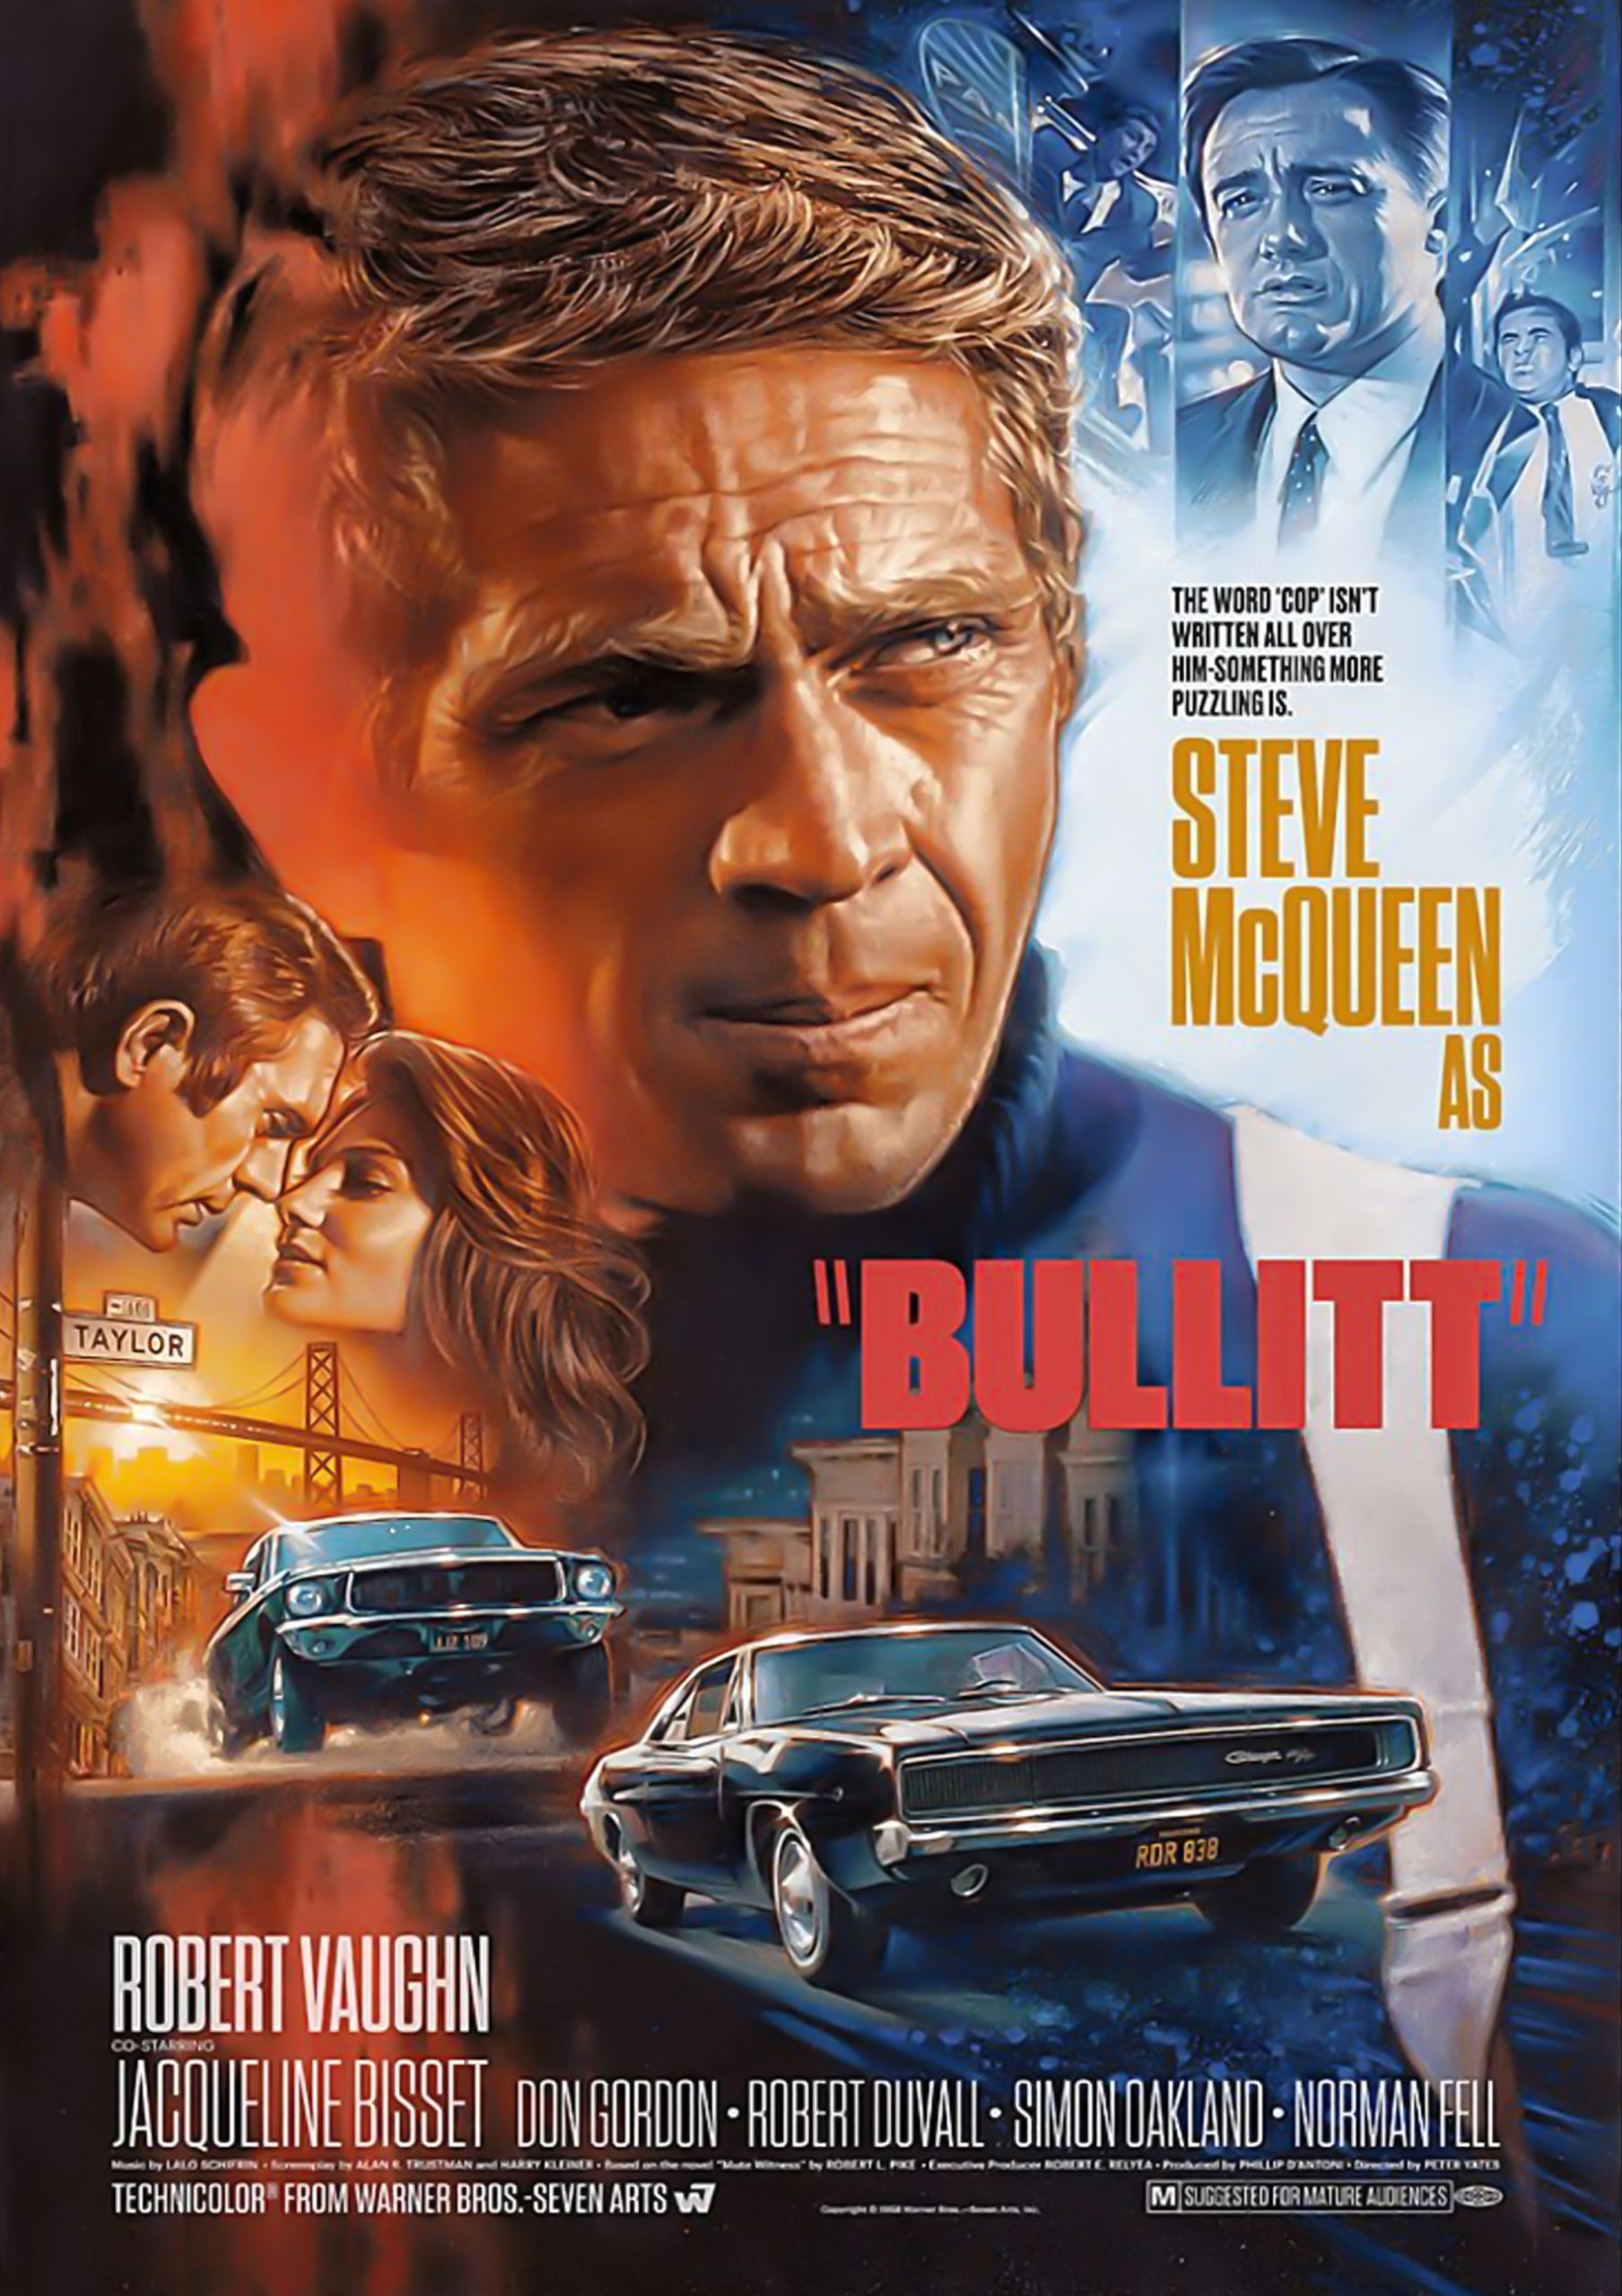 Steve Mcqueen as Bullitt poster